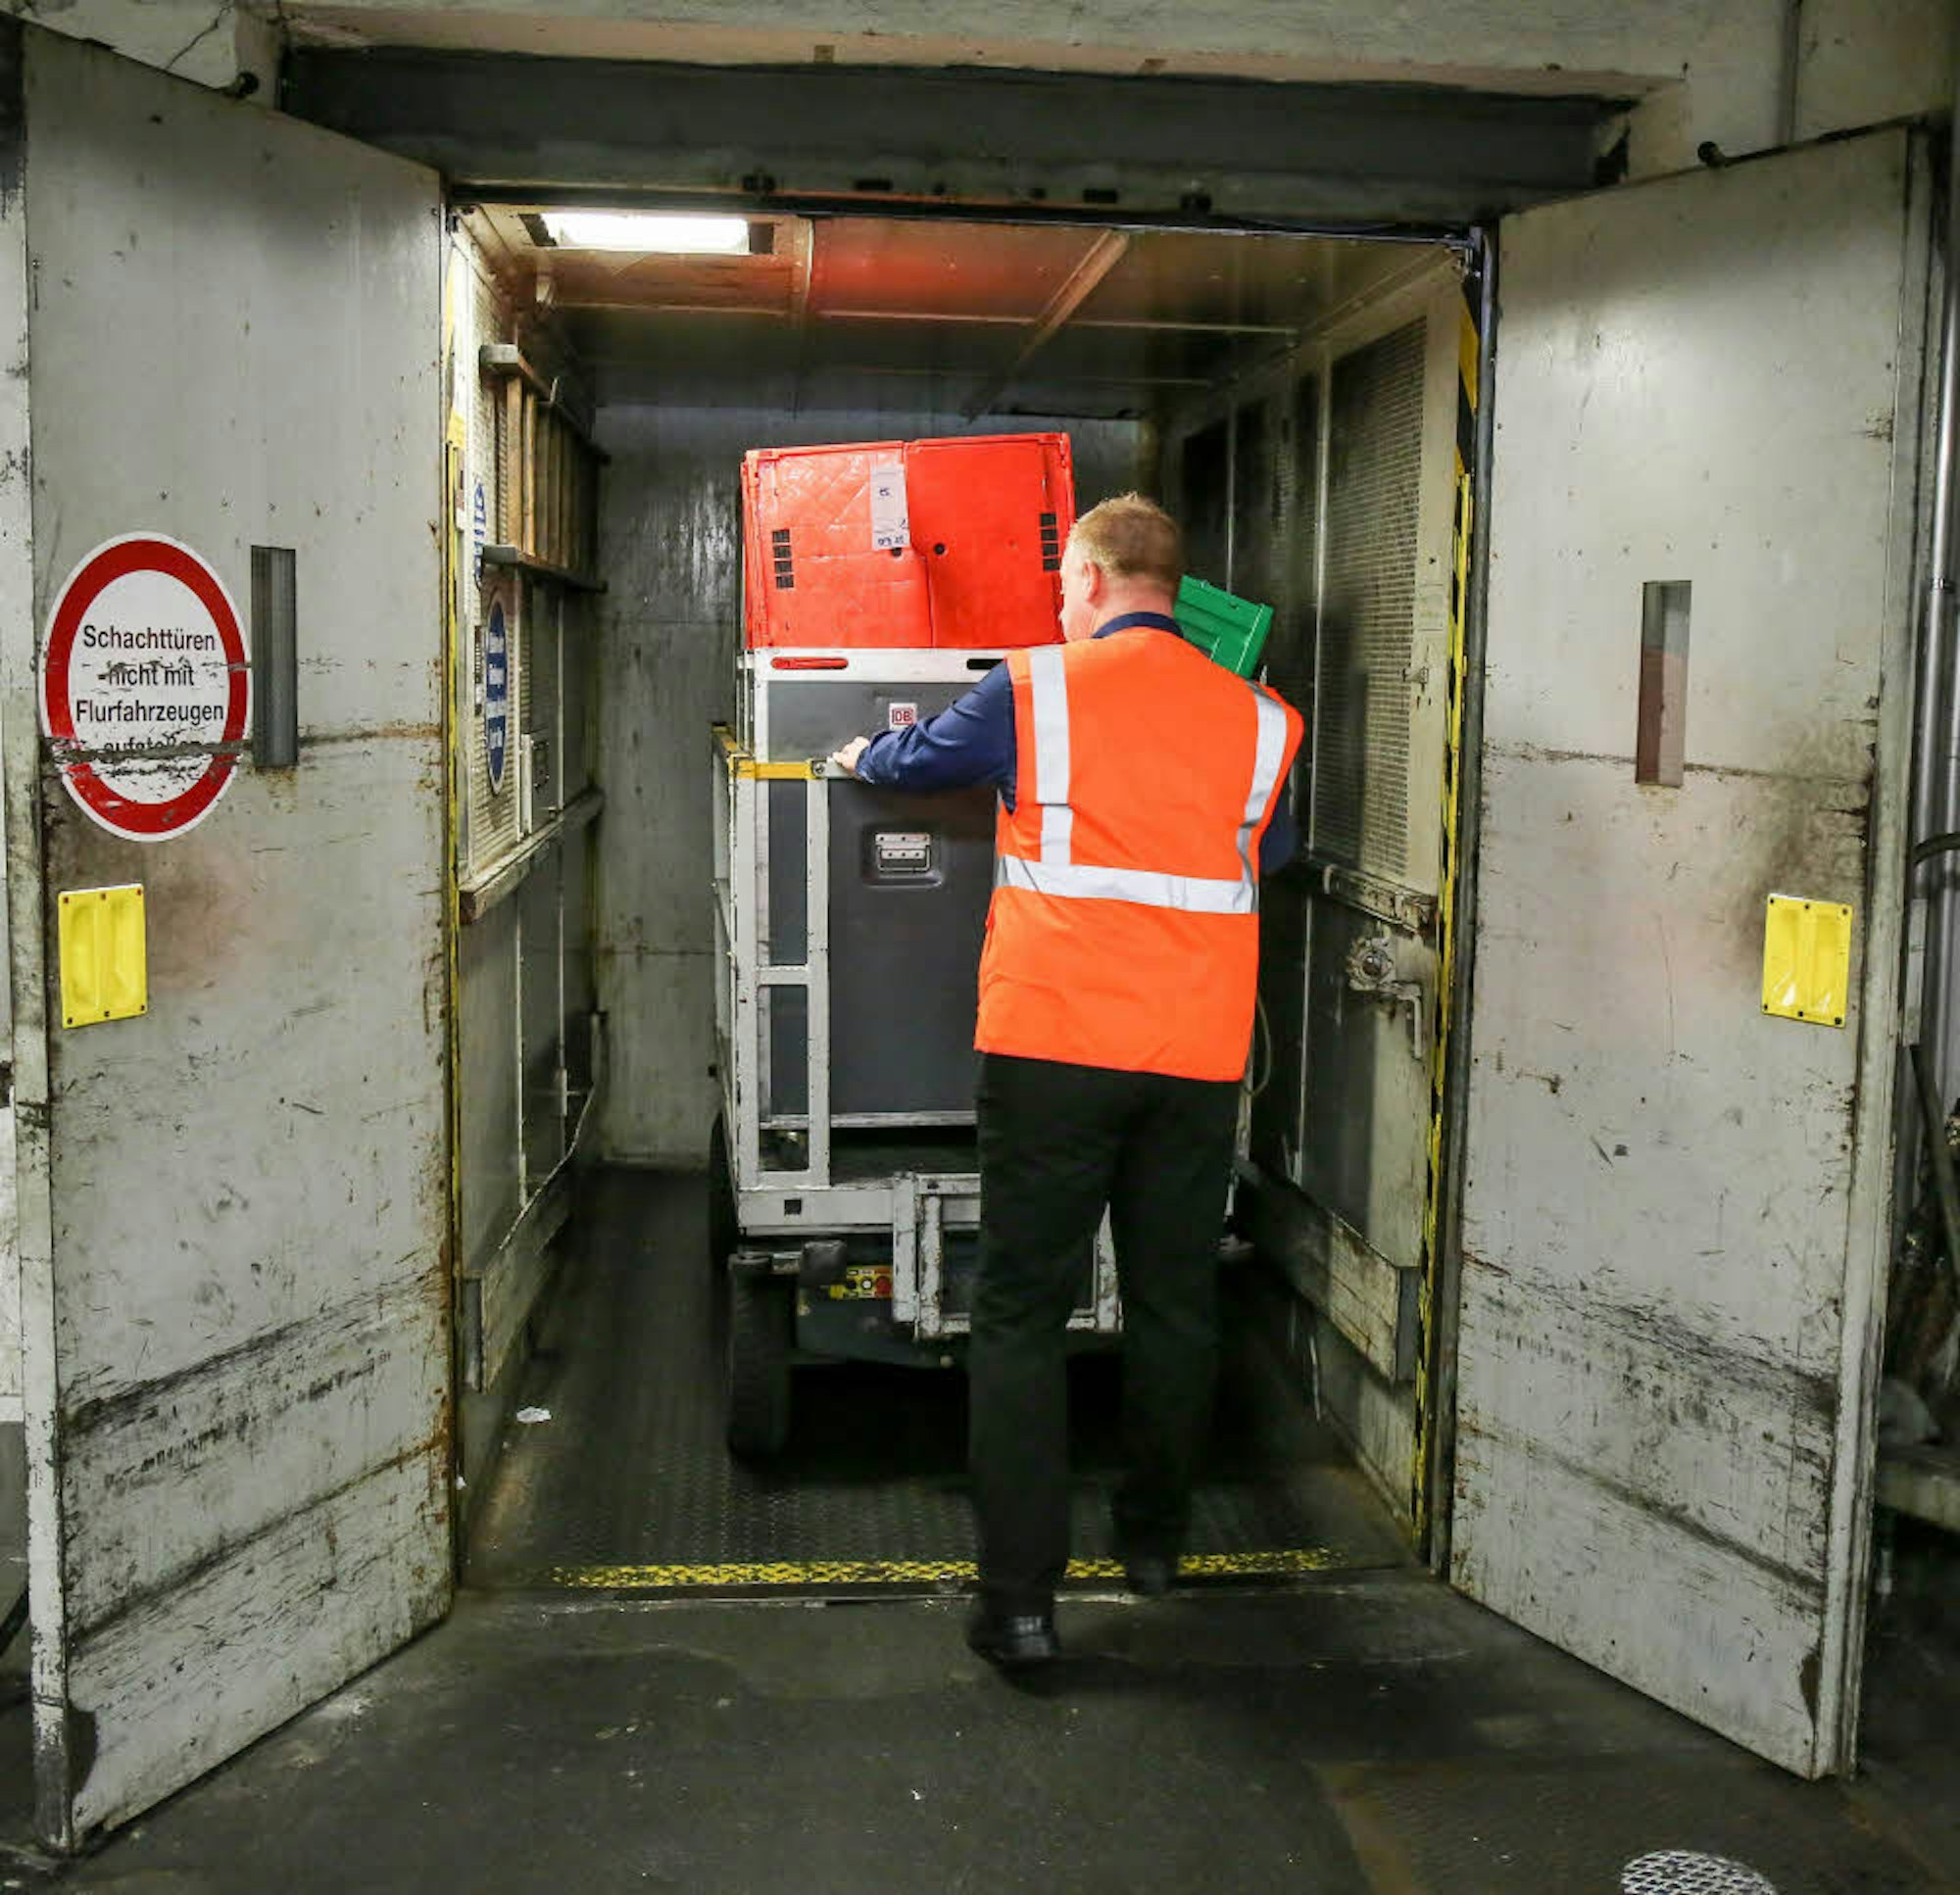 Jeder Zug erhält einen eigenen Container mit Ware, die Fahrer transportieren ihn mit dem Schlepper durch den Tunnel.